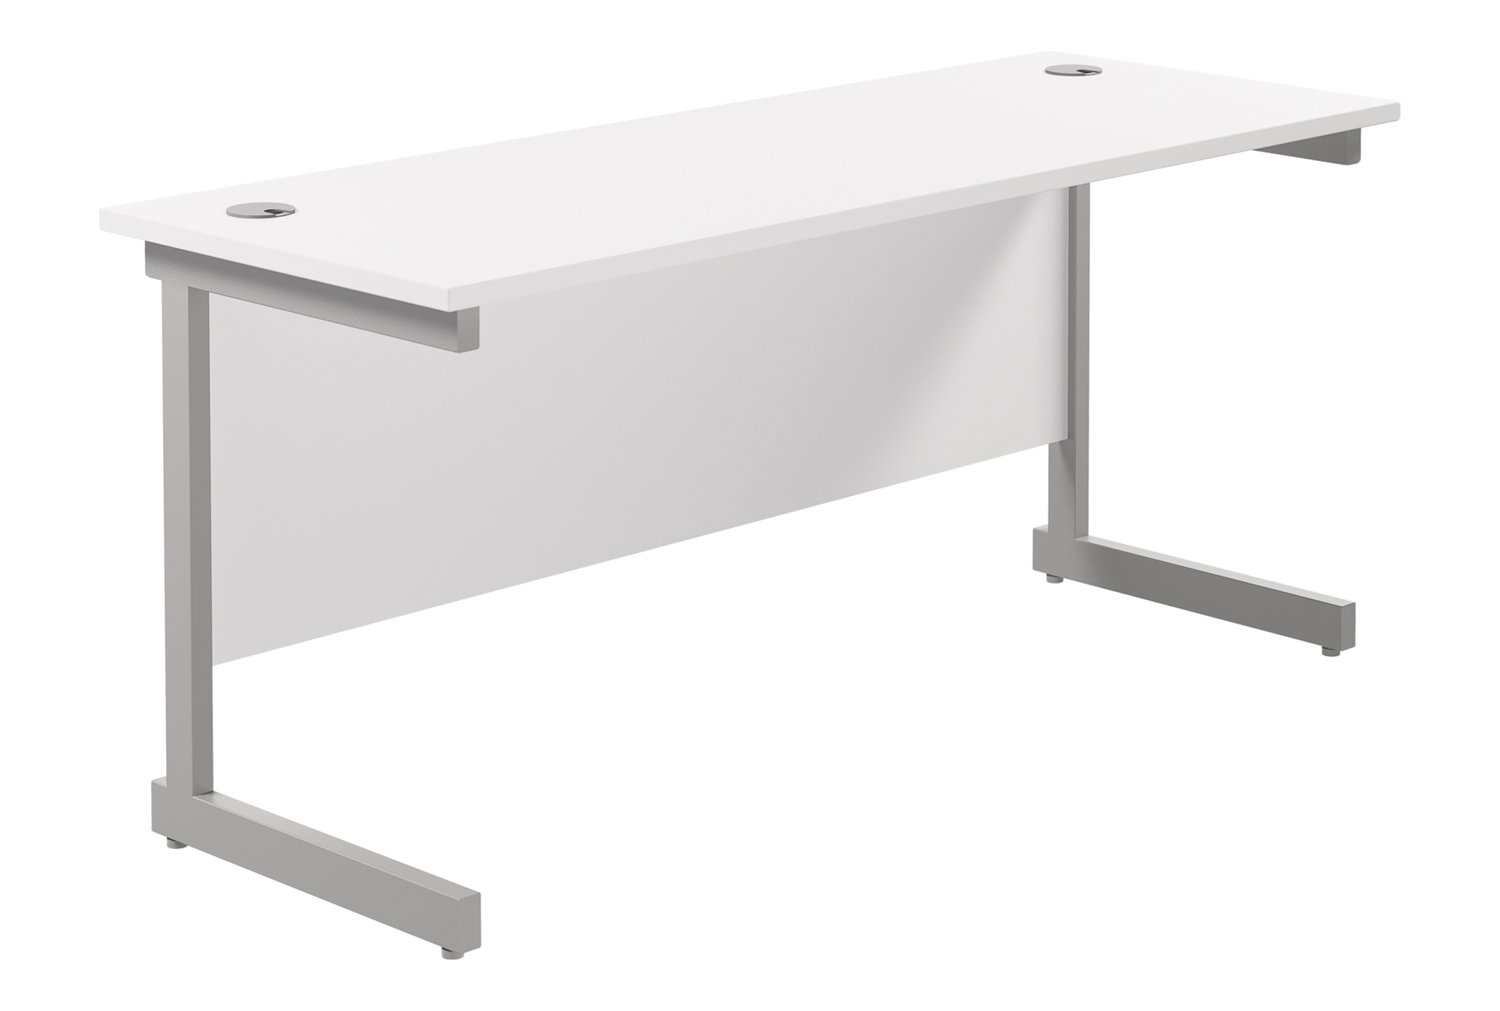 Progress I Narrow Rectangular Office Desk, 160w60dx73h (cm), Silver Frame, White, Fully Installed